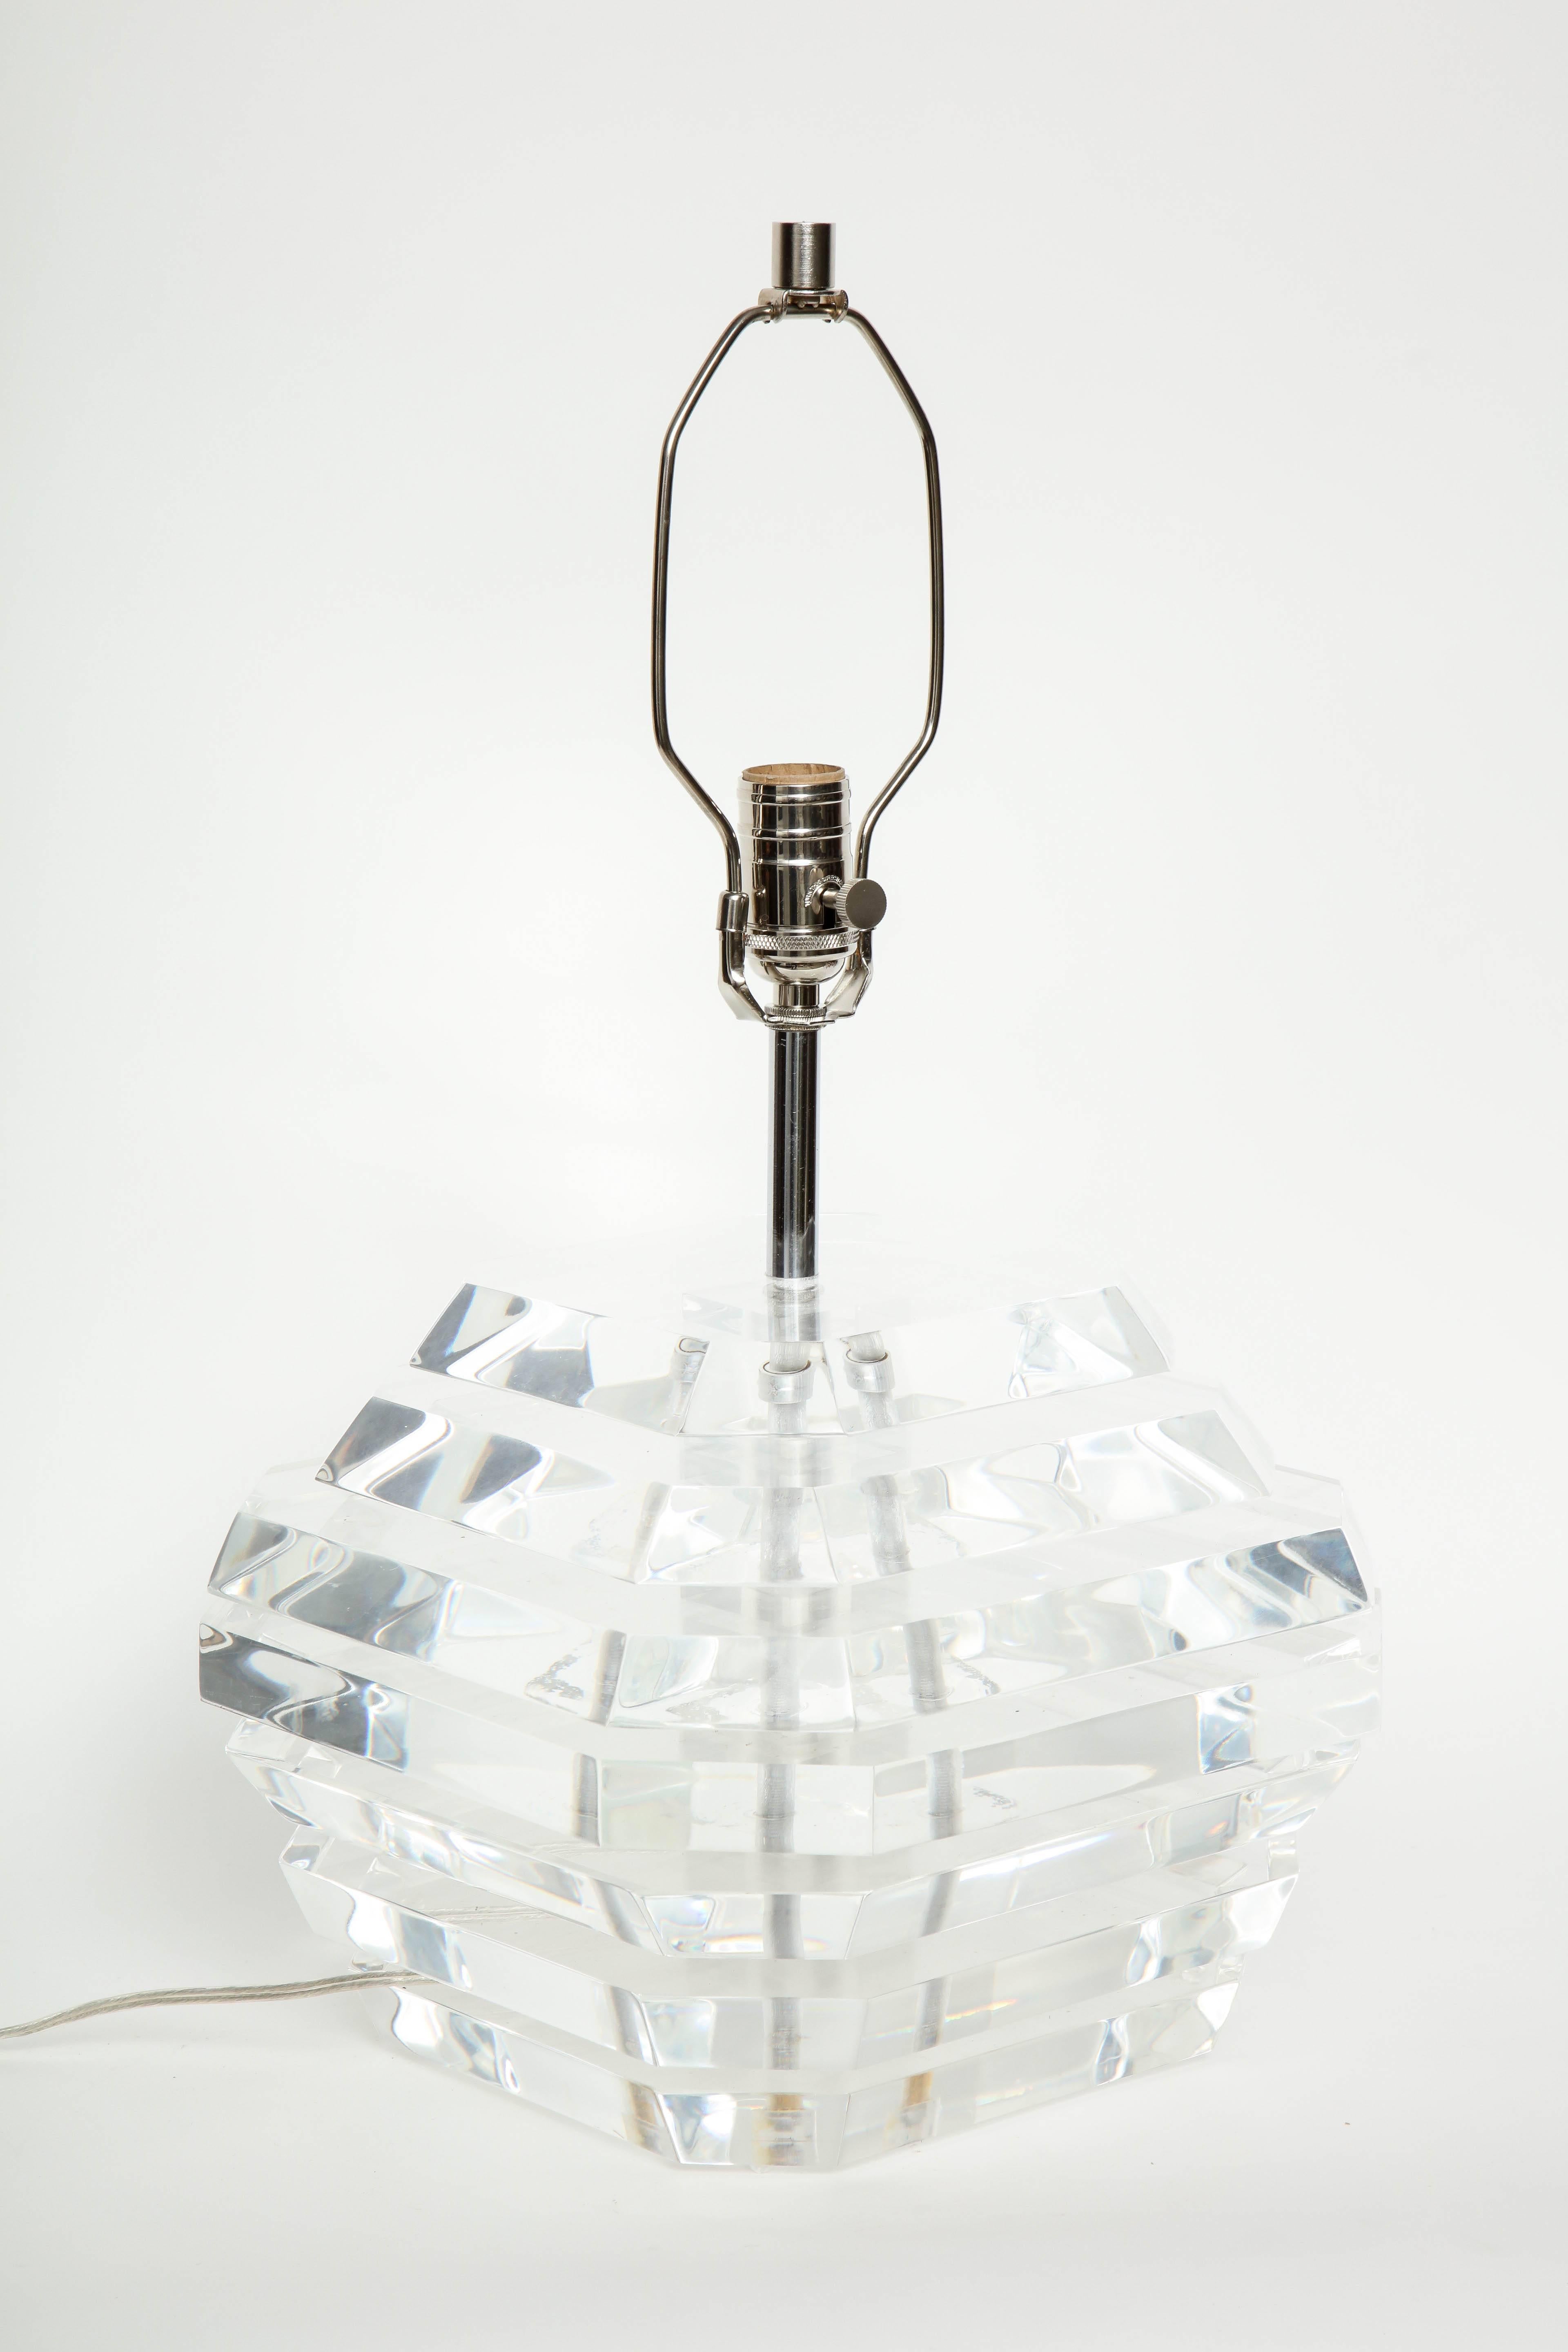 Zwei gestapelte Lucite-Lampen, entworfen von George Bullio, mit stilisierten trapezförmigen Sockeln mit abgeschrägten Kanten. Umverdrahtet für den Einsatz in den USA, Glühbirnen mit max. 100 W.